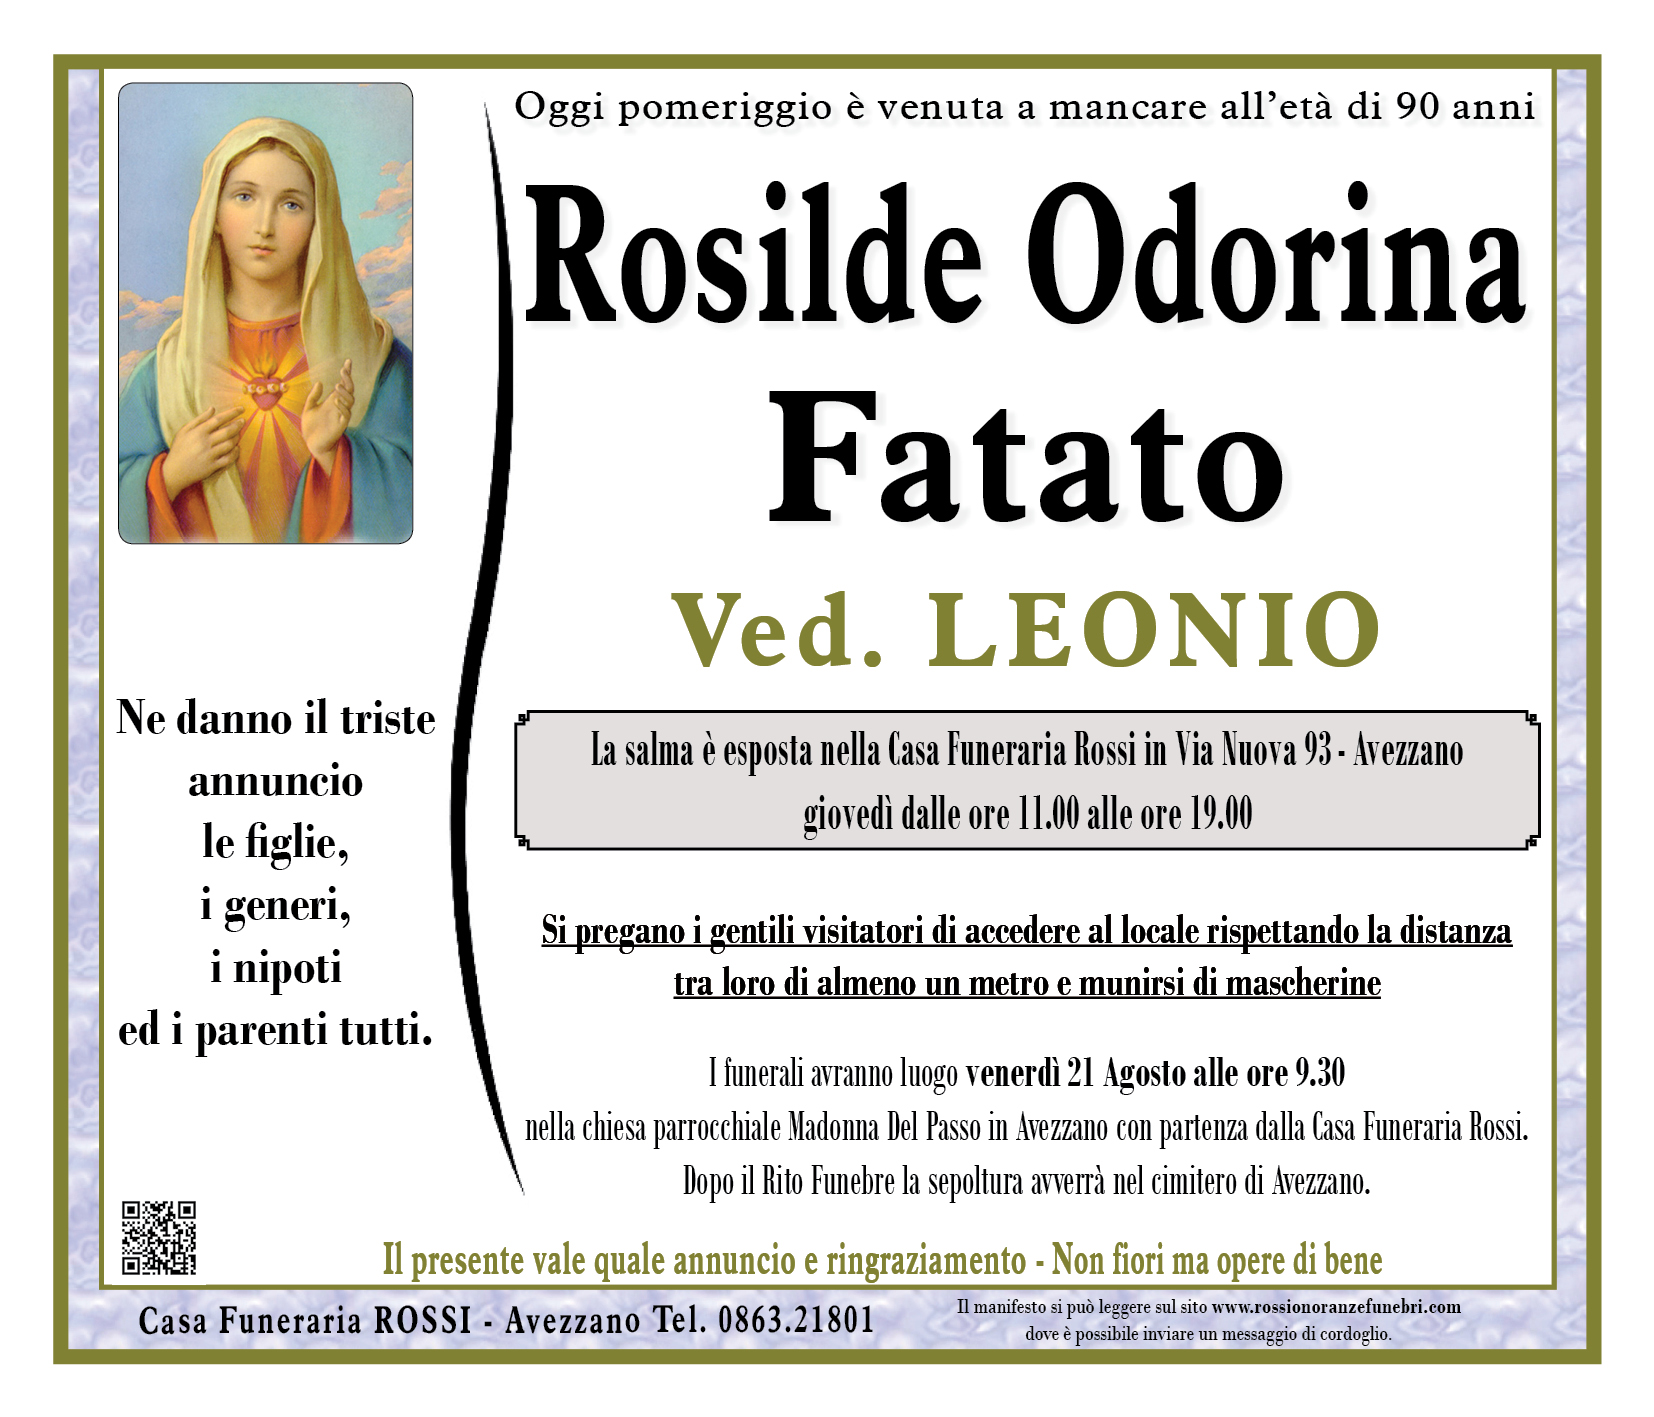 Rosilde Odorina Fatato